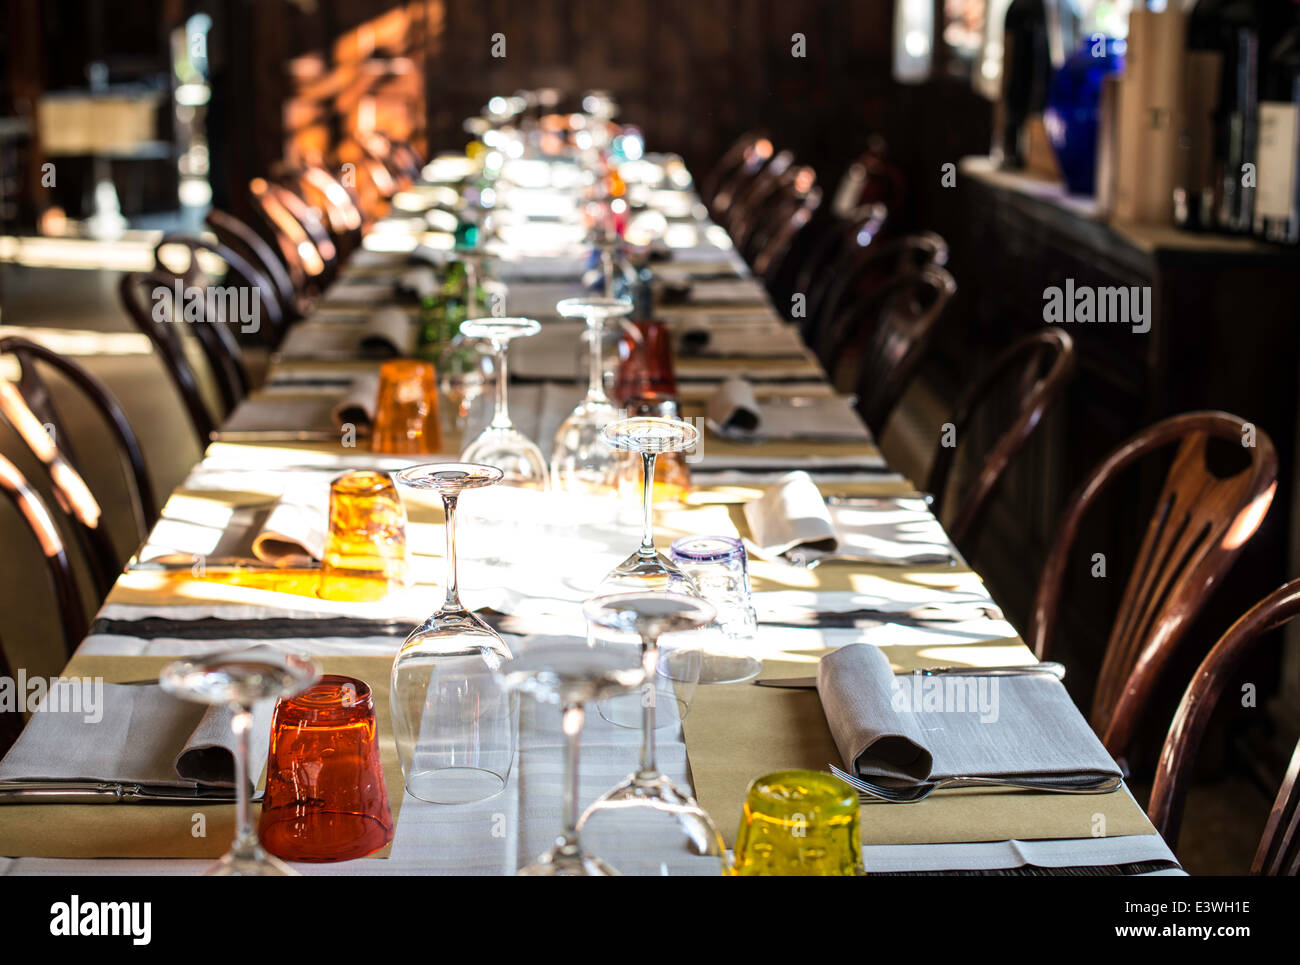 Table dans un restaurant italien. Meubles anciens en bois Banque D'Images